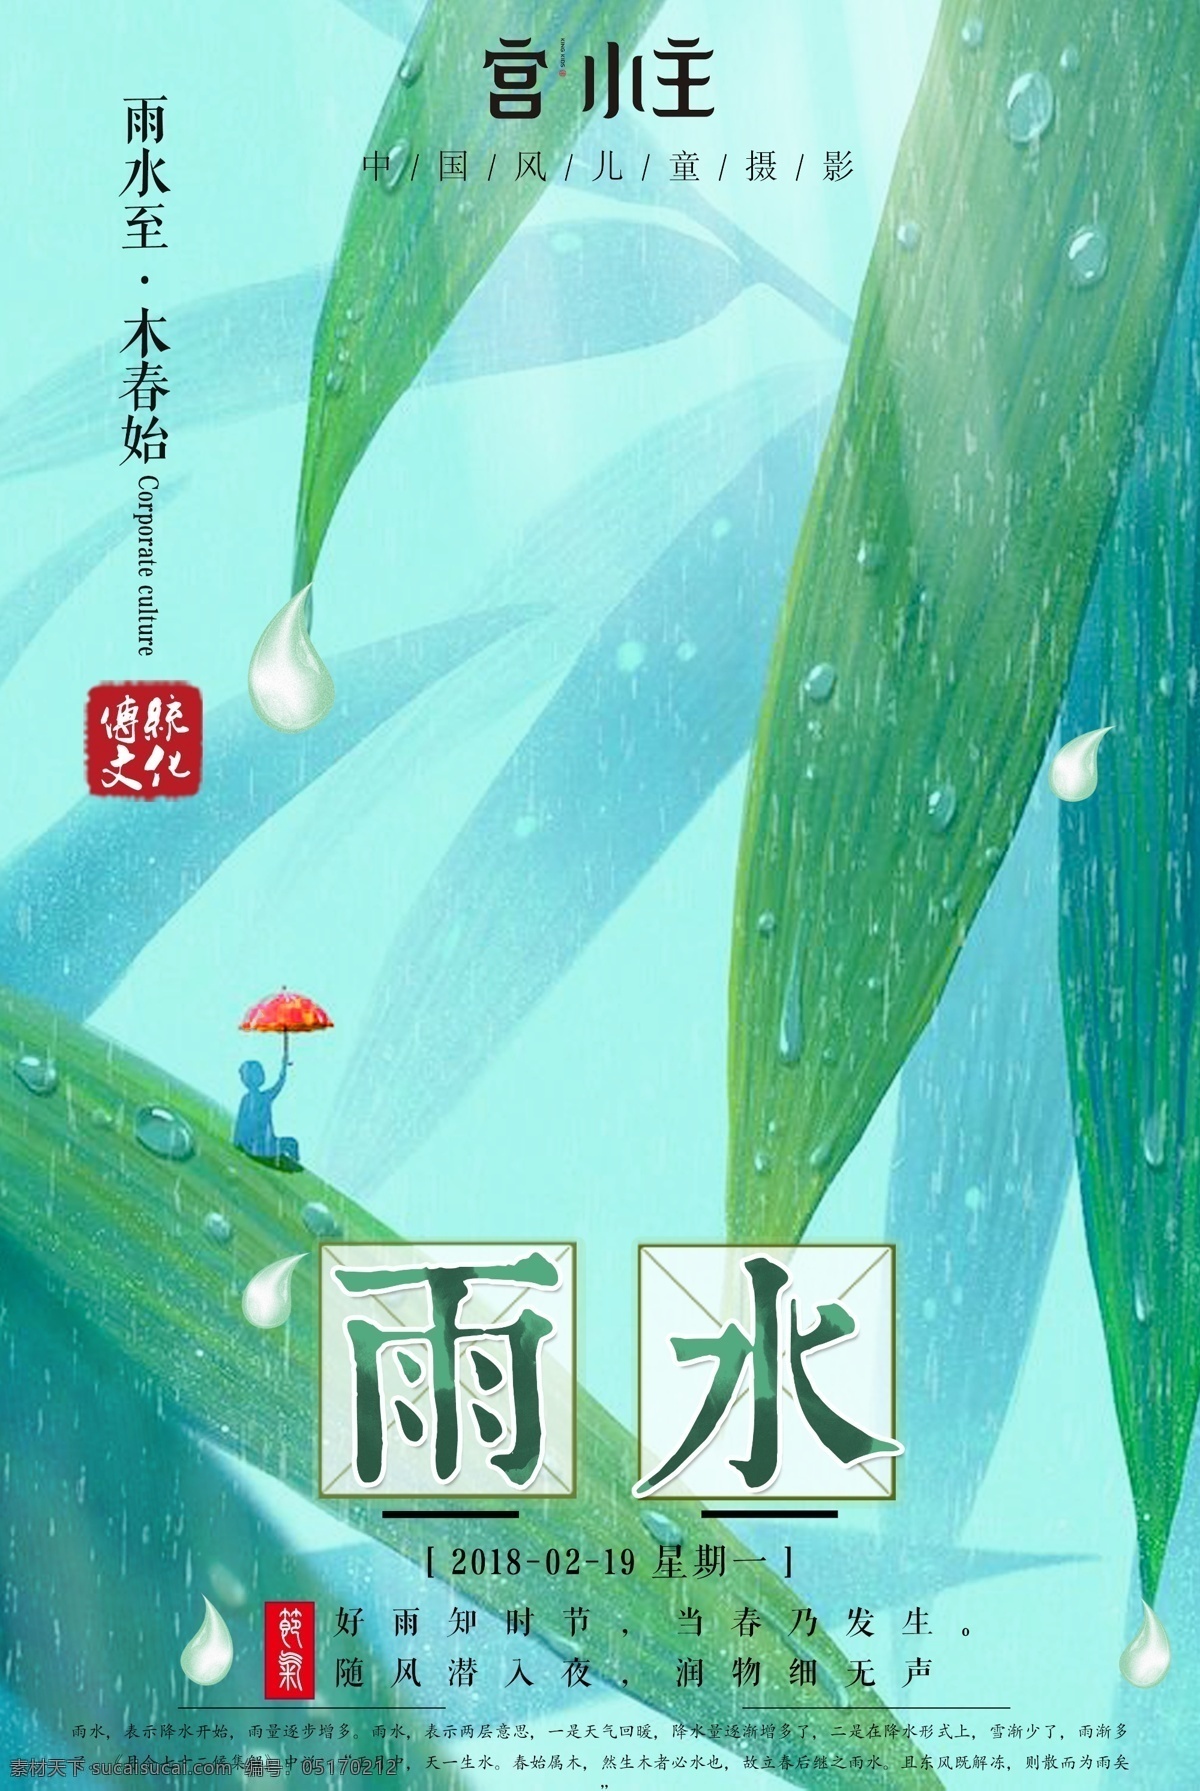 雨水节气海报 二十四节气 树叶 手绘树叶 手绘雨滴 绿色元素 手绘风格 节日节气海报 雨水 字体设计